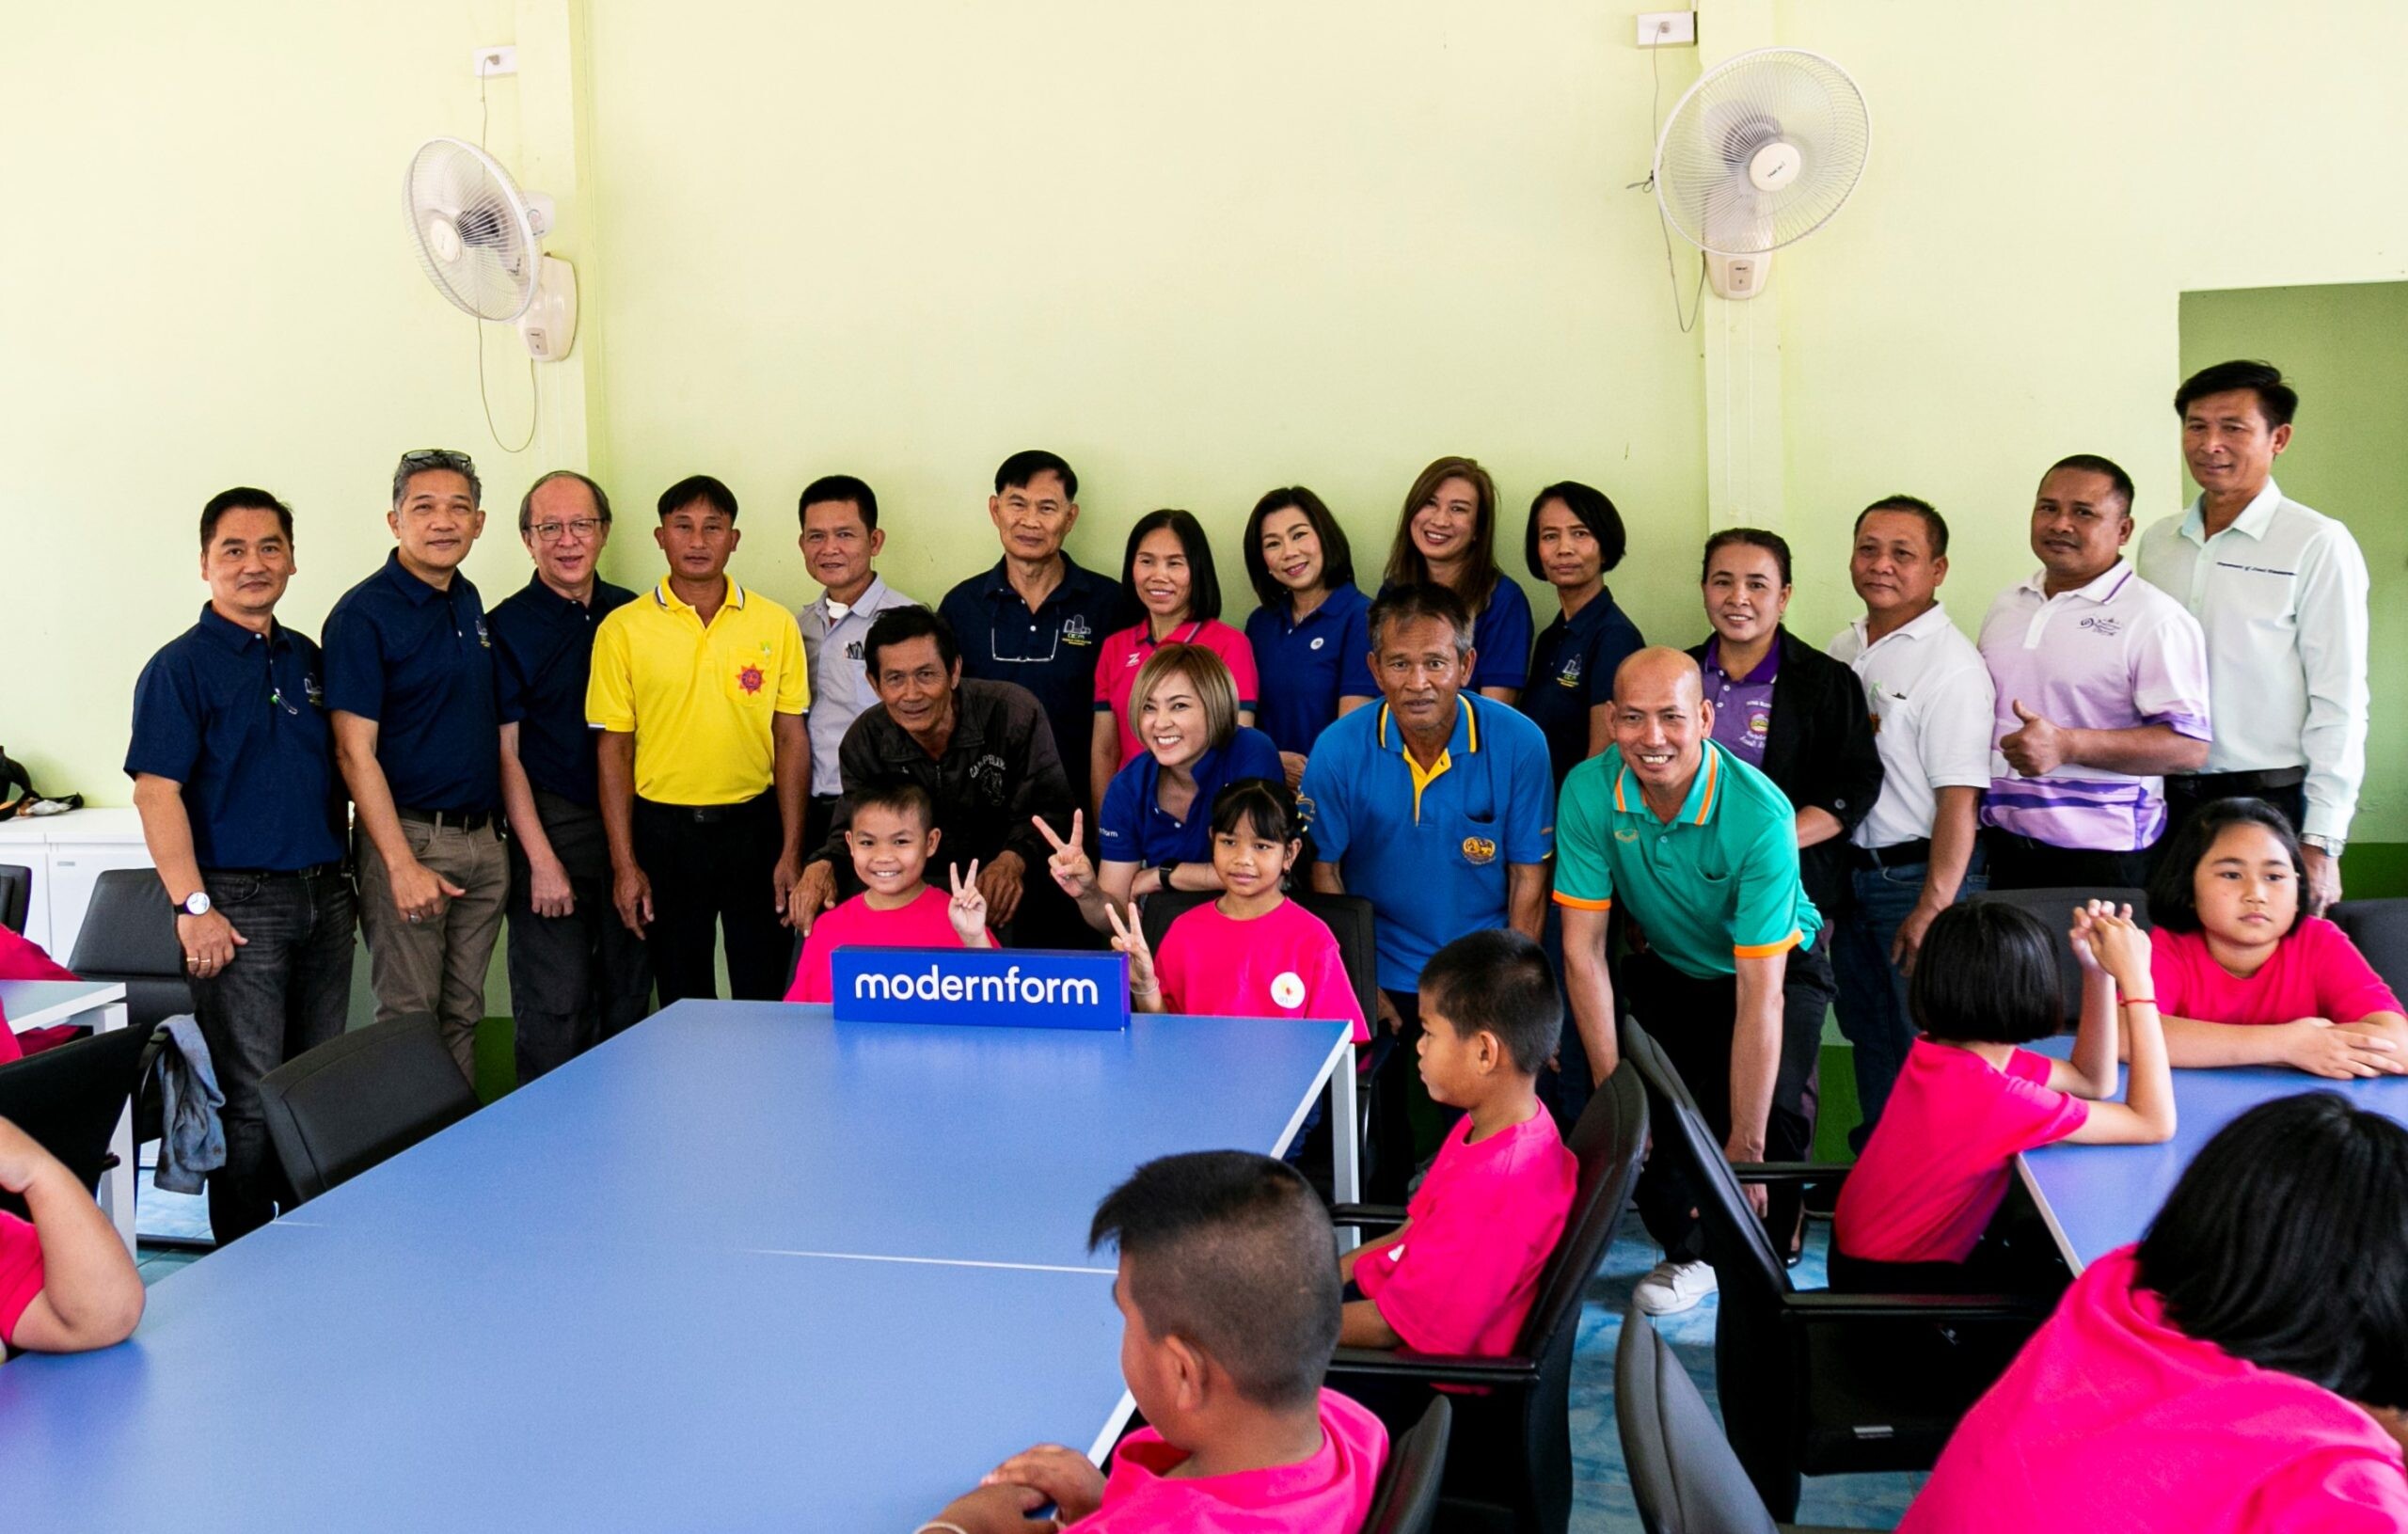 การไฟฟ้าฝ่ายผลิตแห่งประเทศไทย ร่วมกับ โมเดอร์นฟอร์ม สนับสนุนเฟอร์นิเจอร์และอุปกรณ์การเรียนให้กับ โรงเรียนบ้านดงสว่าง จังหวัดบึงกาฬ